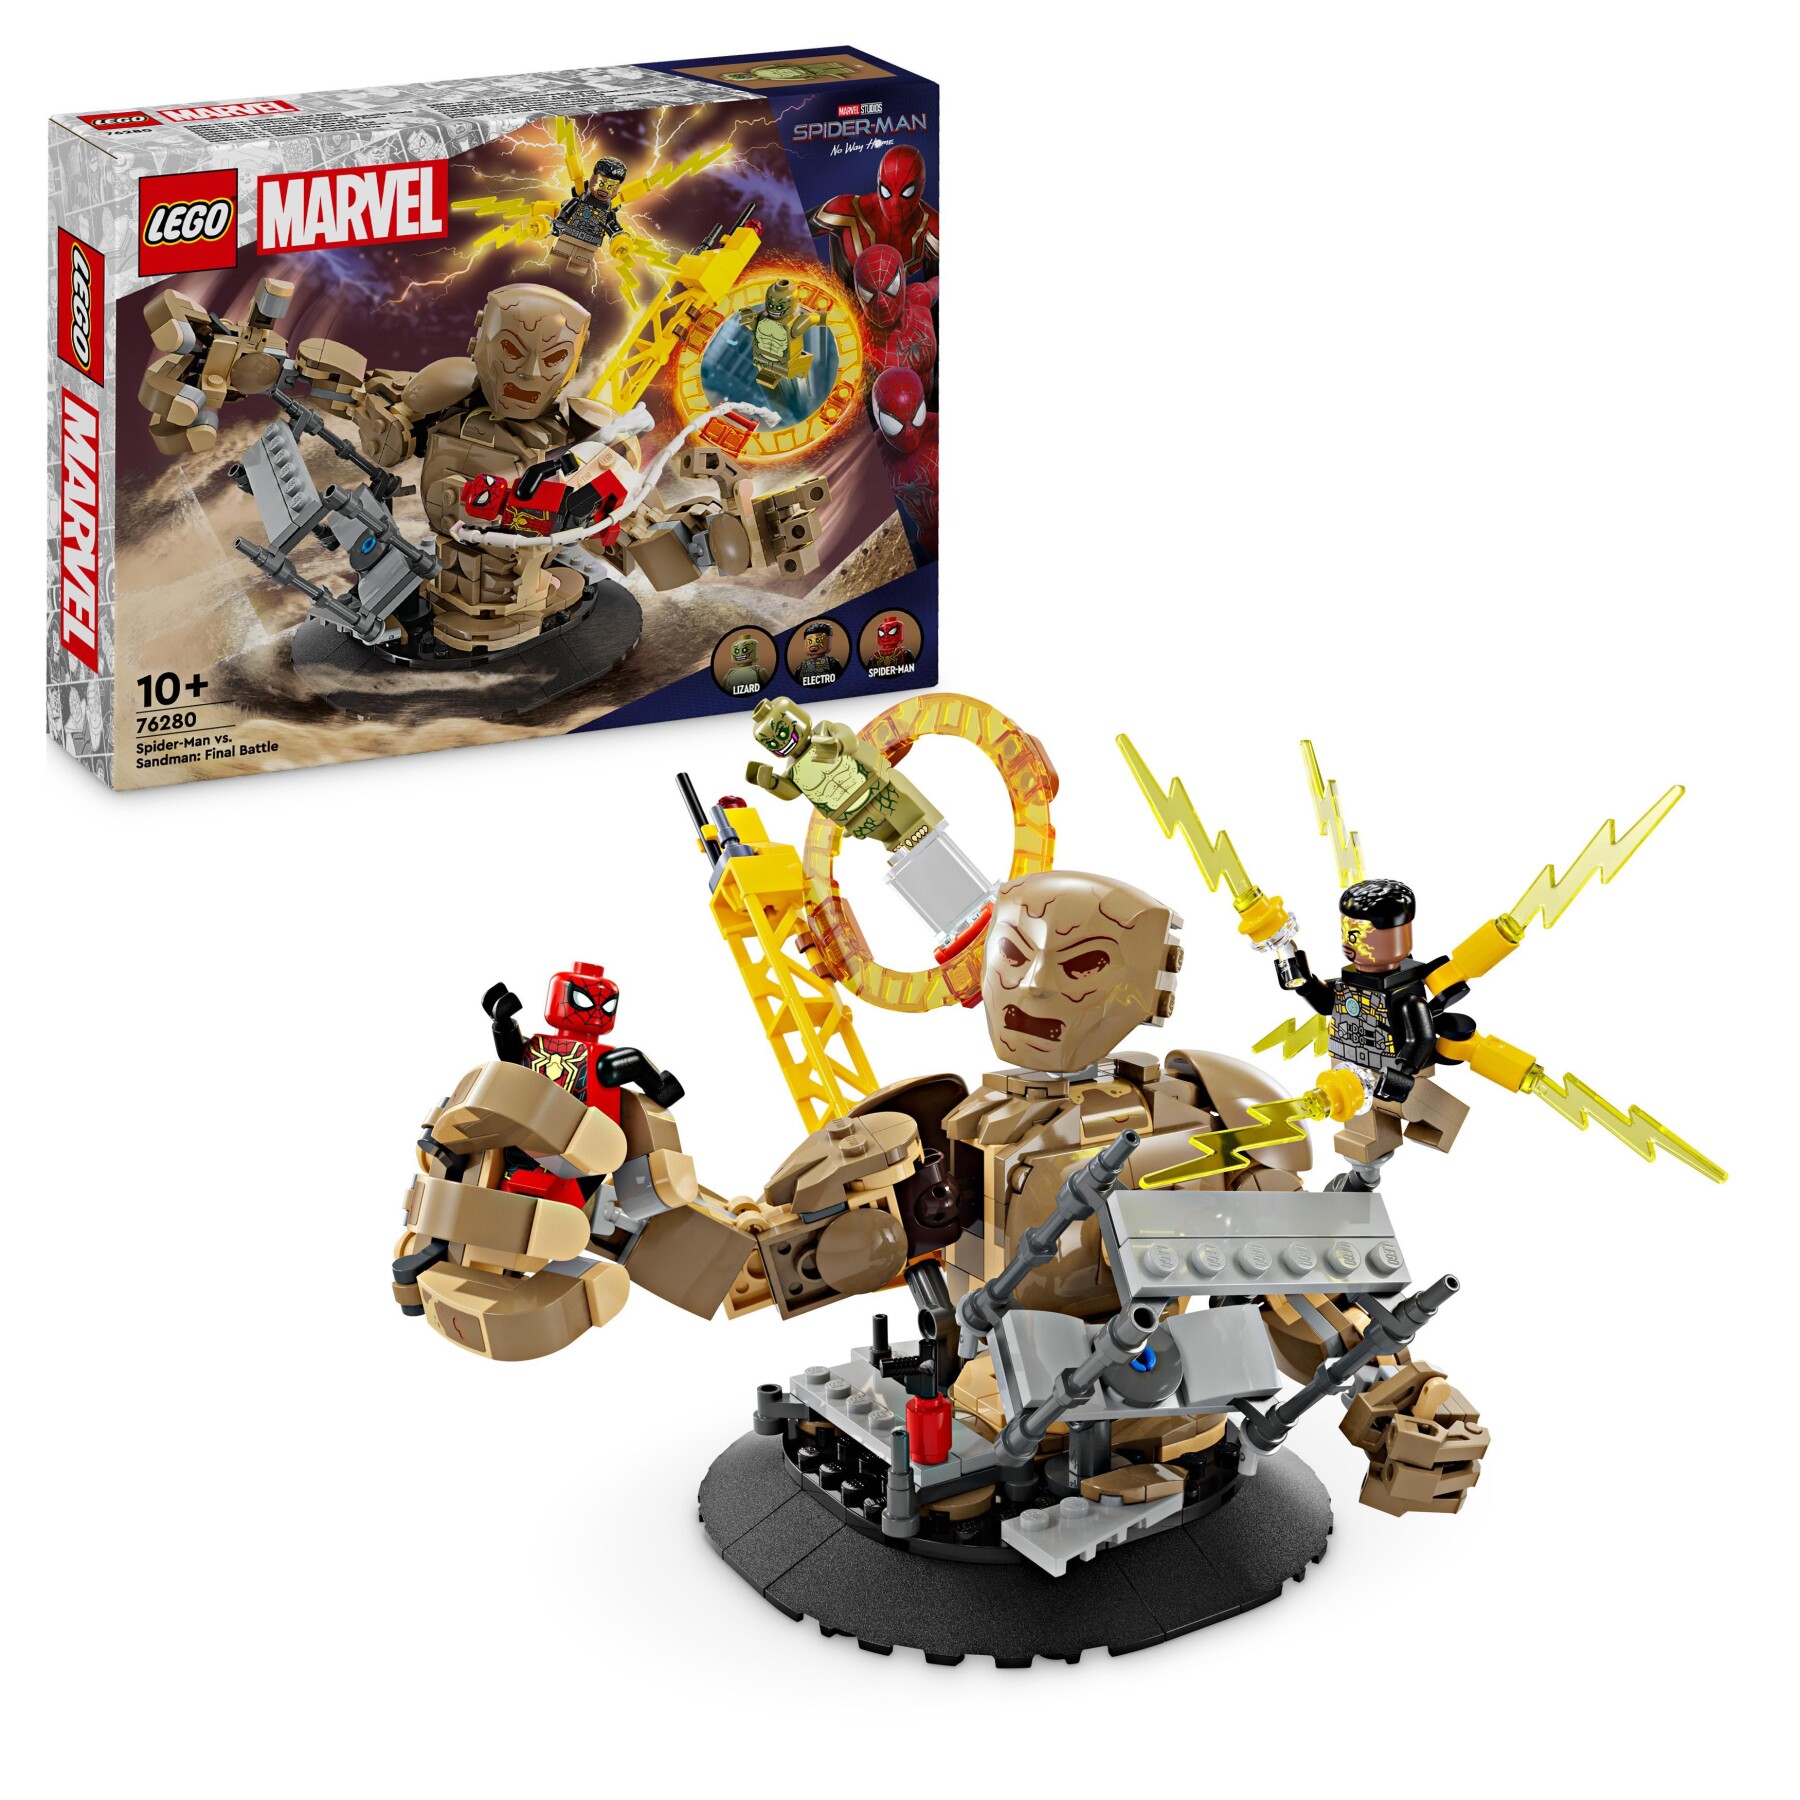 Lego marvel 76280 spider-man vs. uomo sabbia: battaglia finale con minifigure dei cattivi, gioco per bambini 10+, idea regalo - LEGO SUPER HEROES